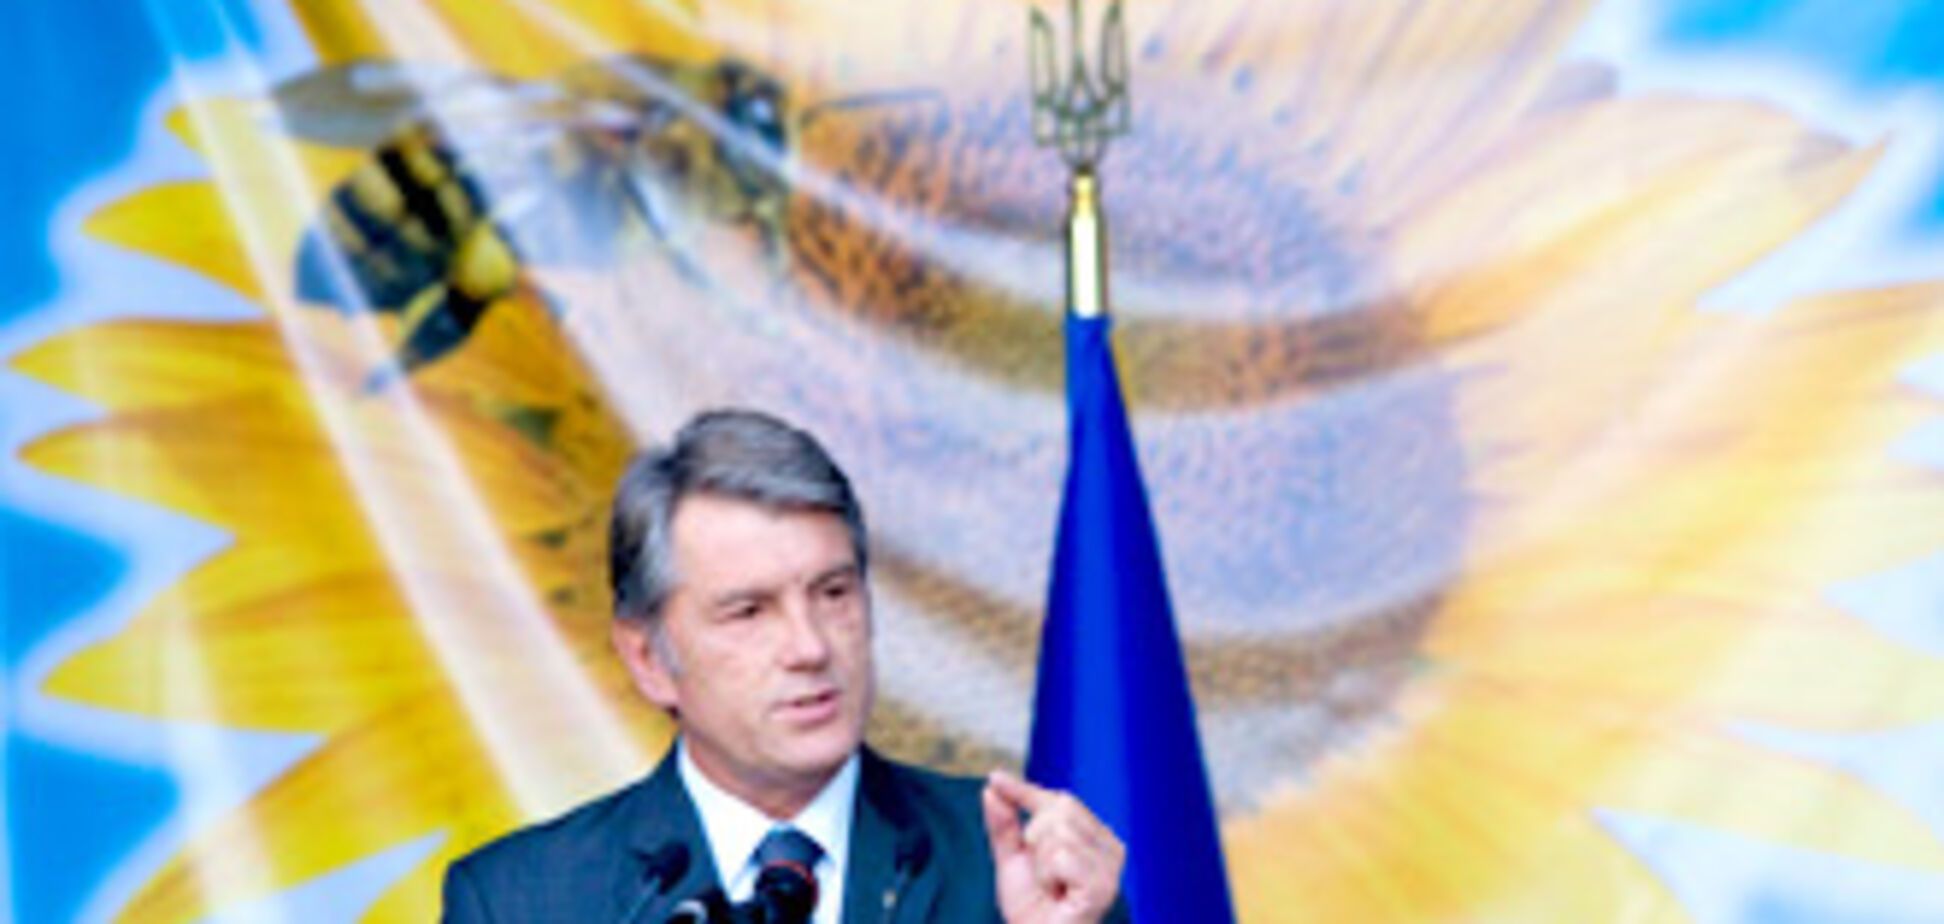 Ющенко 'наехал' на ЕС за шенгенские визы